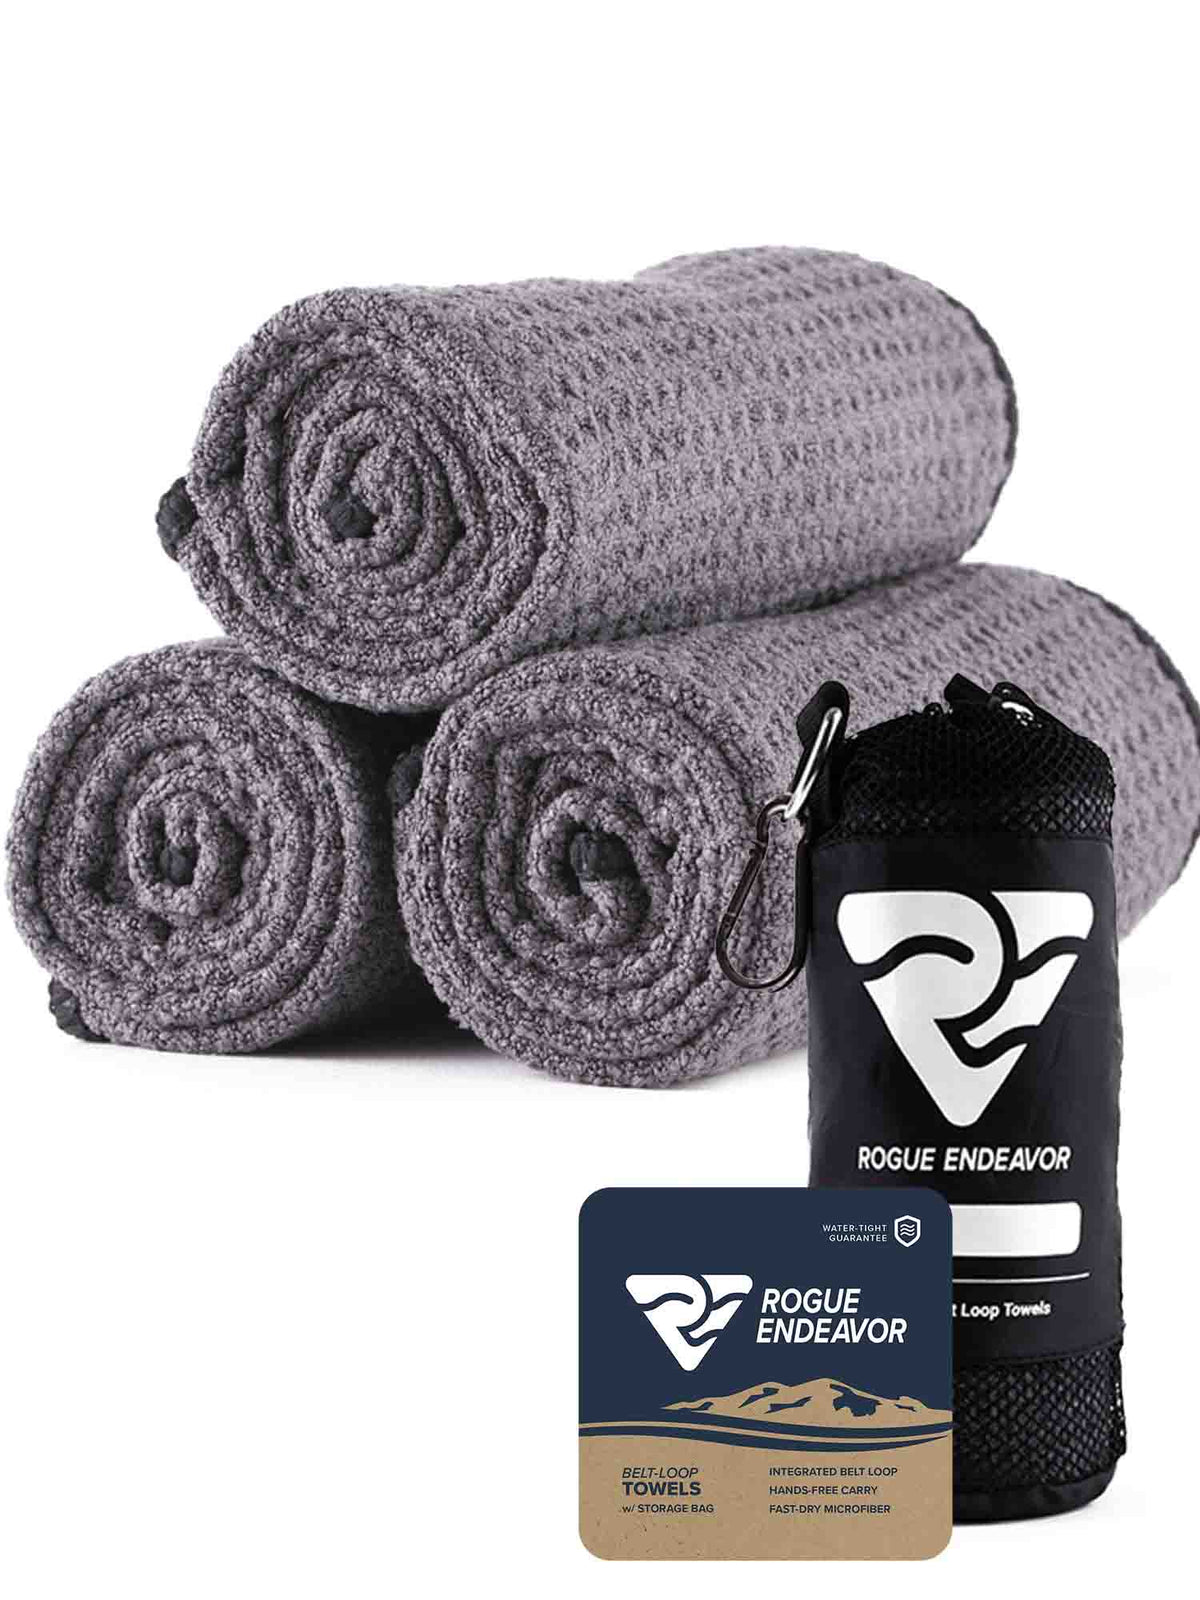 Quick Dry Microfiber Towels with Belt Loop (3 Pack) - RogueEndeavor